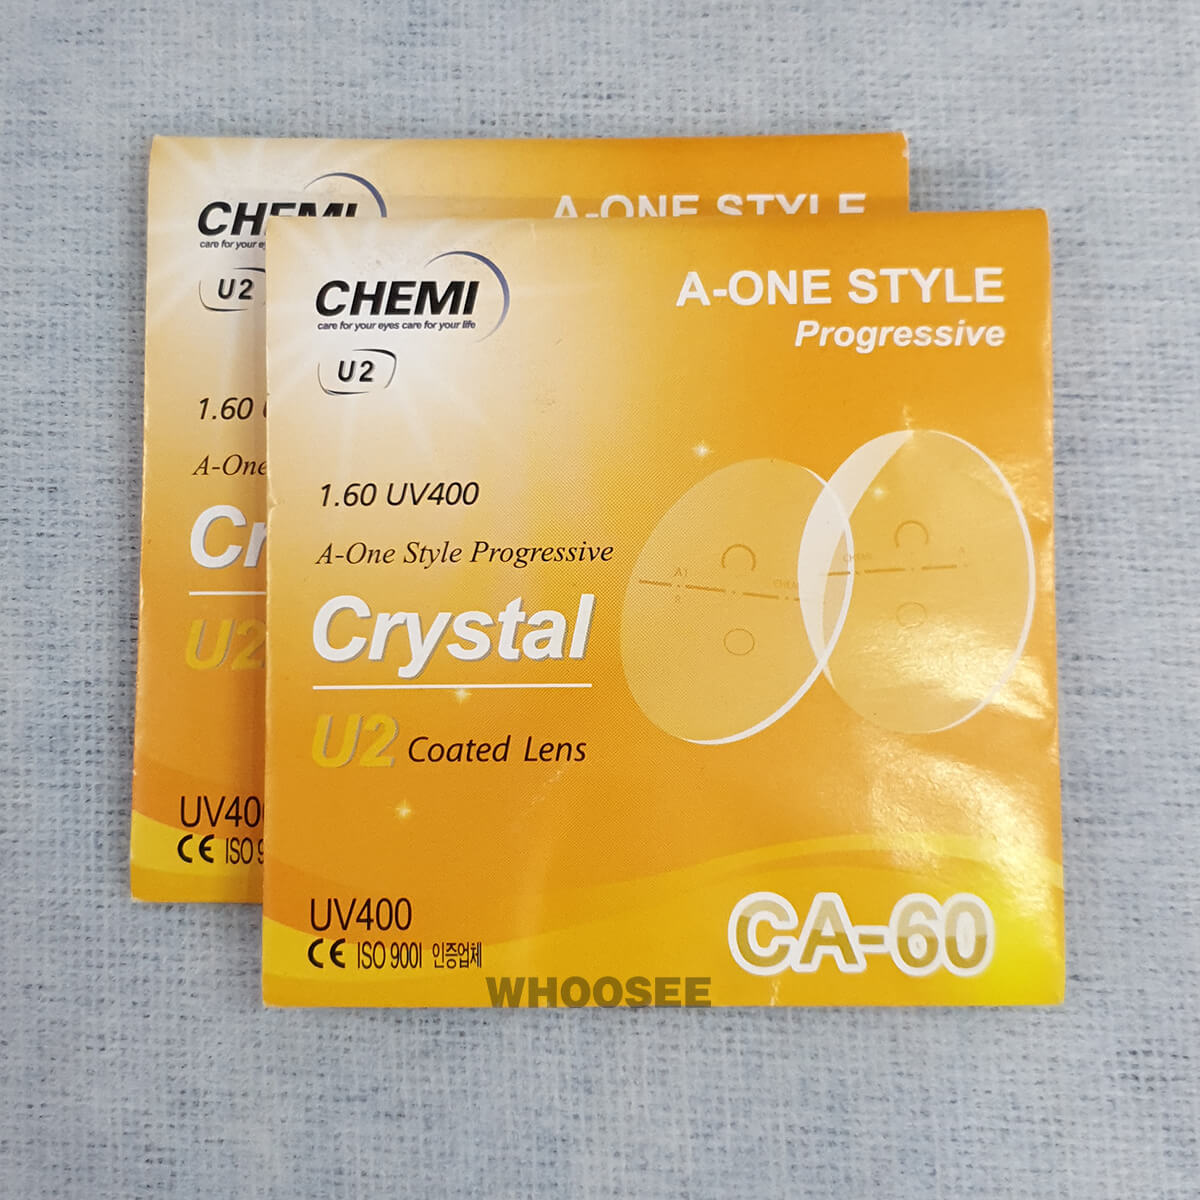 Tròng Kính đa Tròng Chemi Crystal U2 Coated Lens 1 60